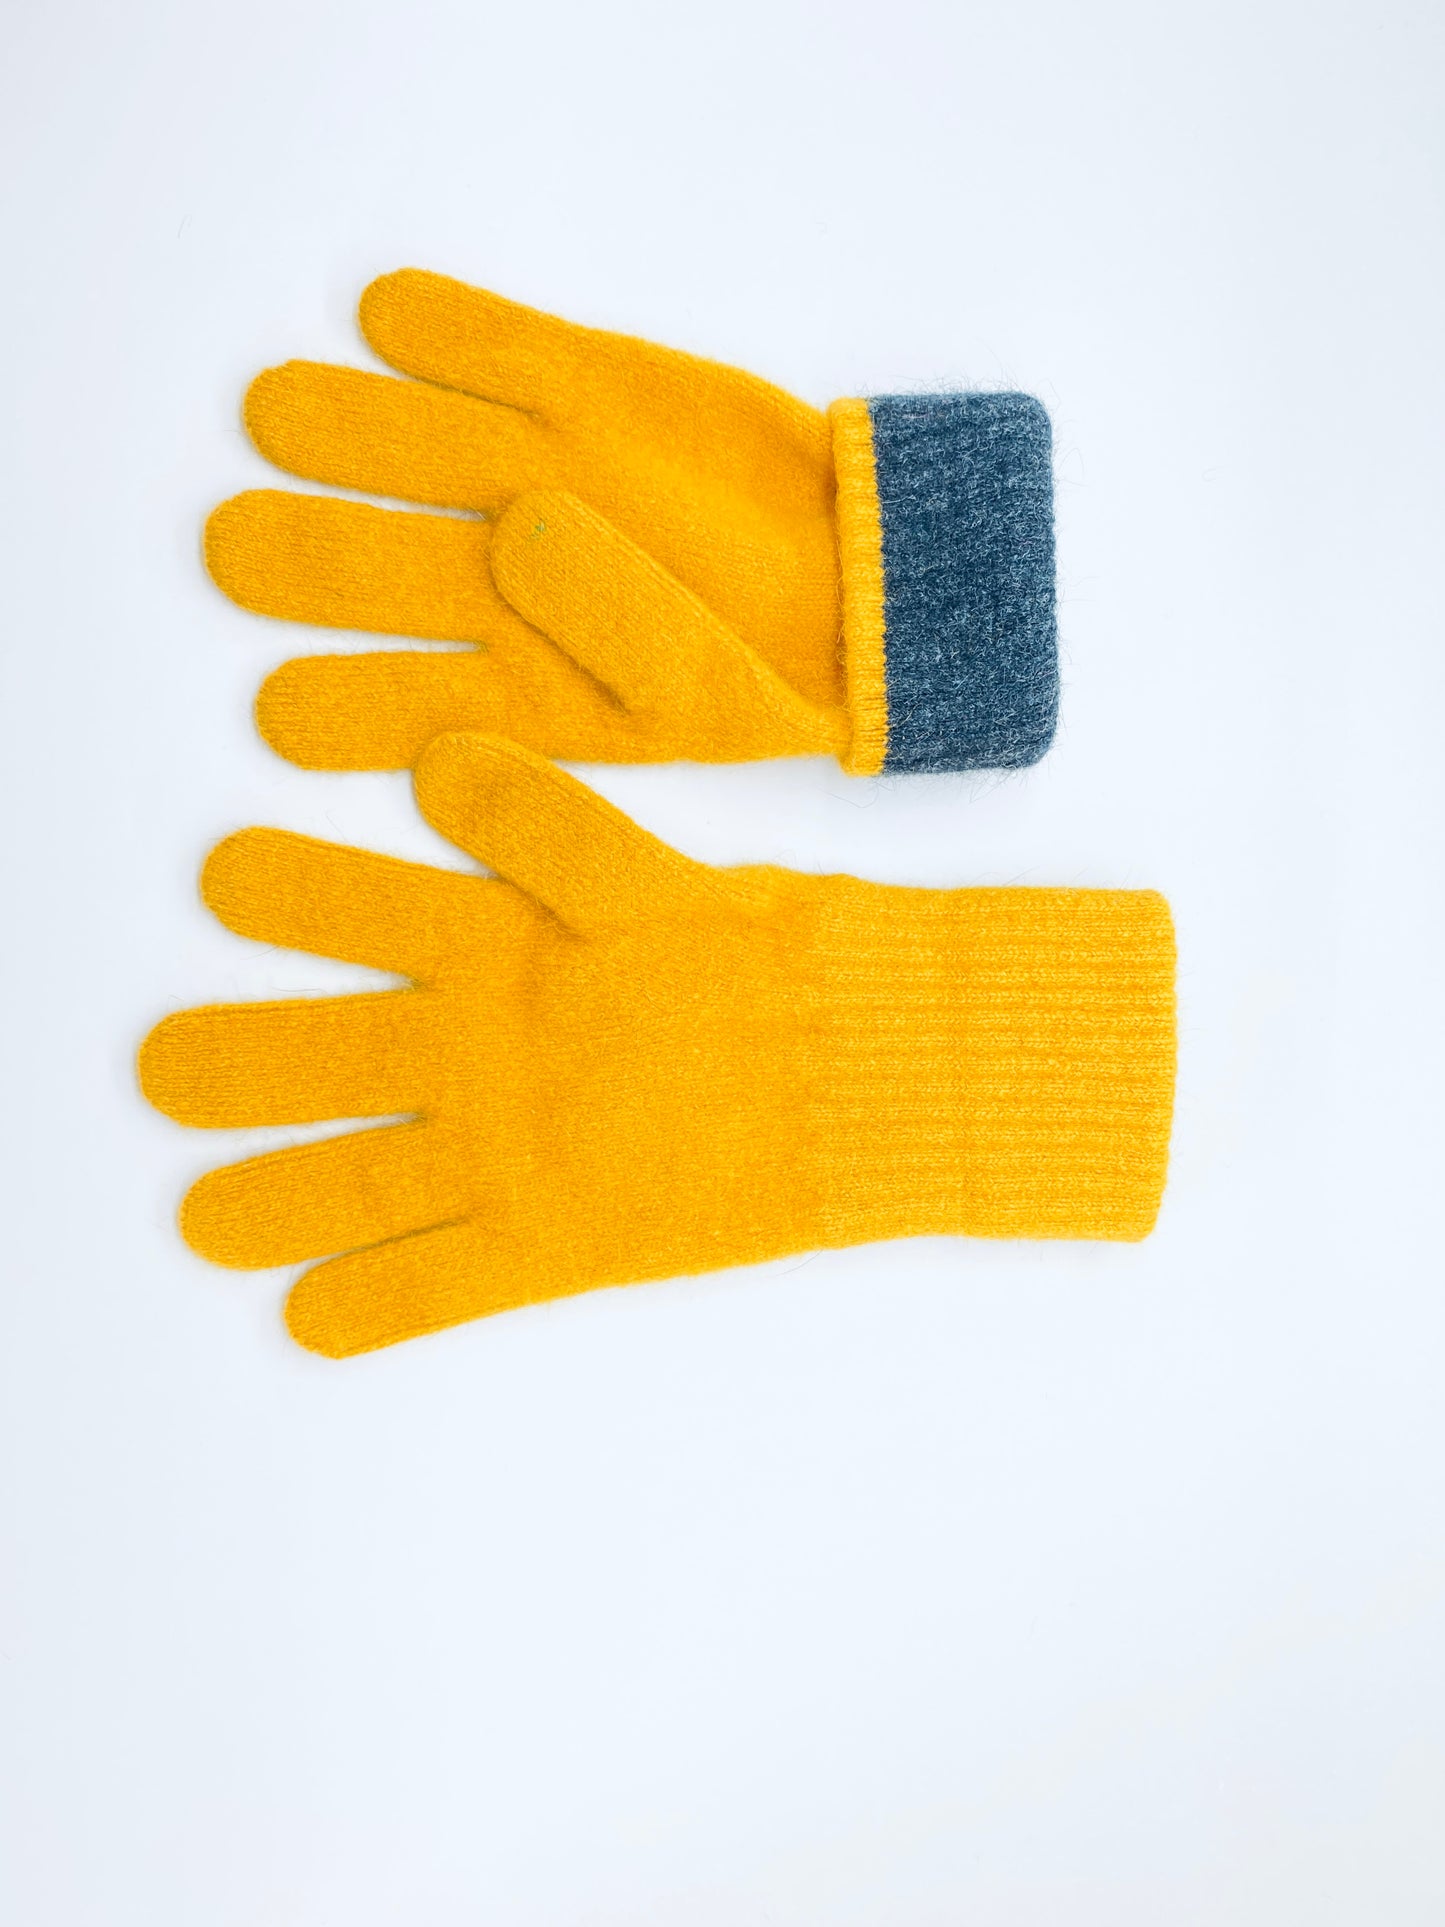 yellow merino wool possum gloves made in new zealand